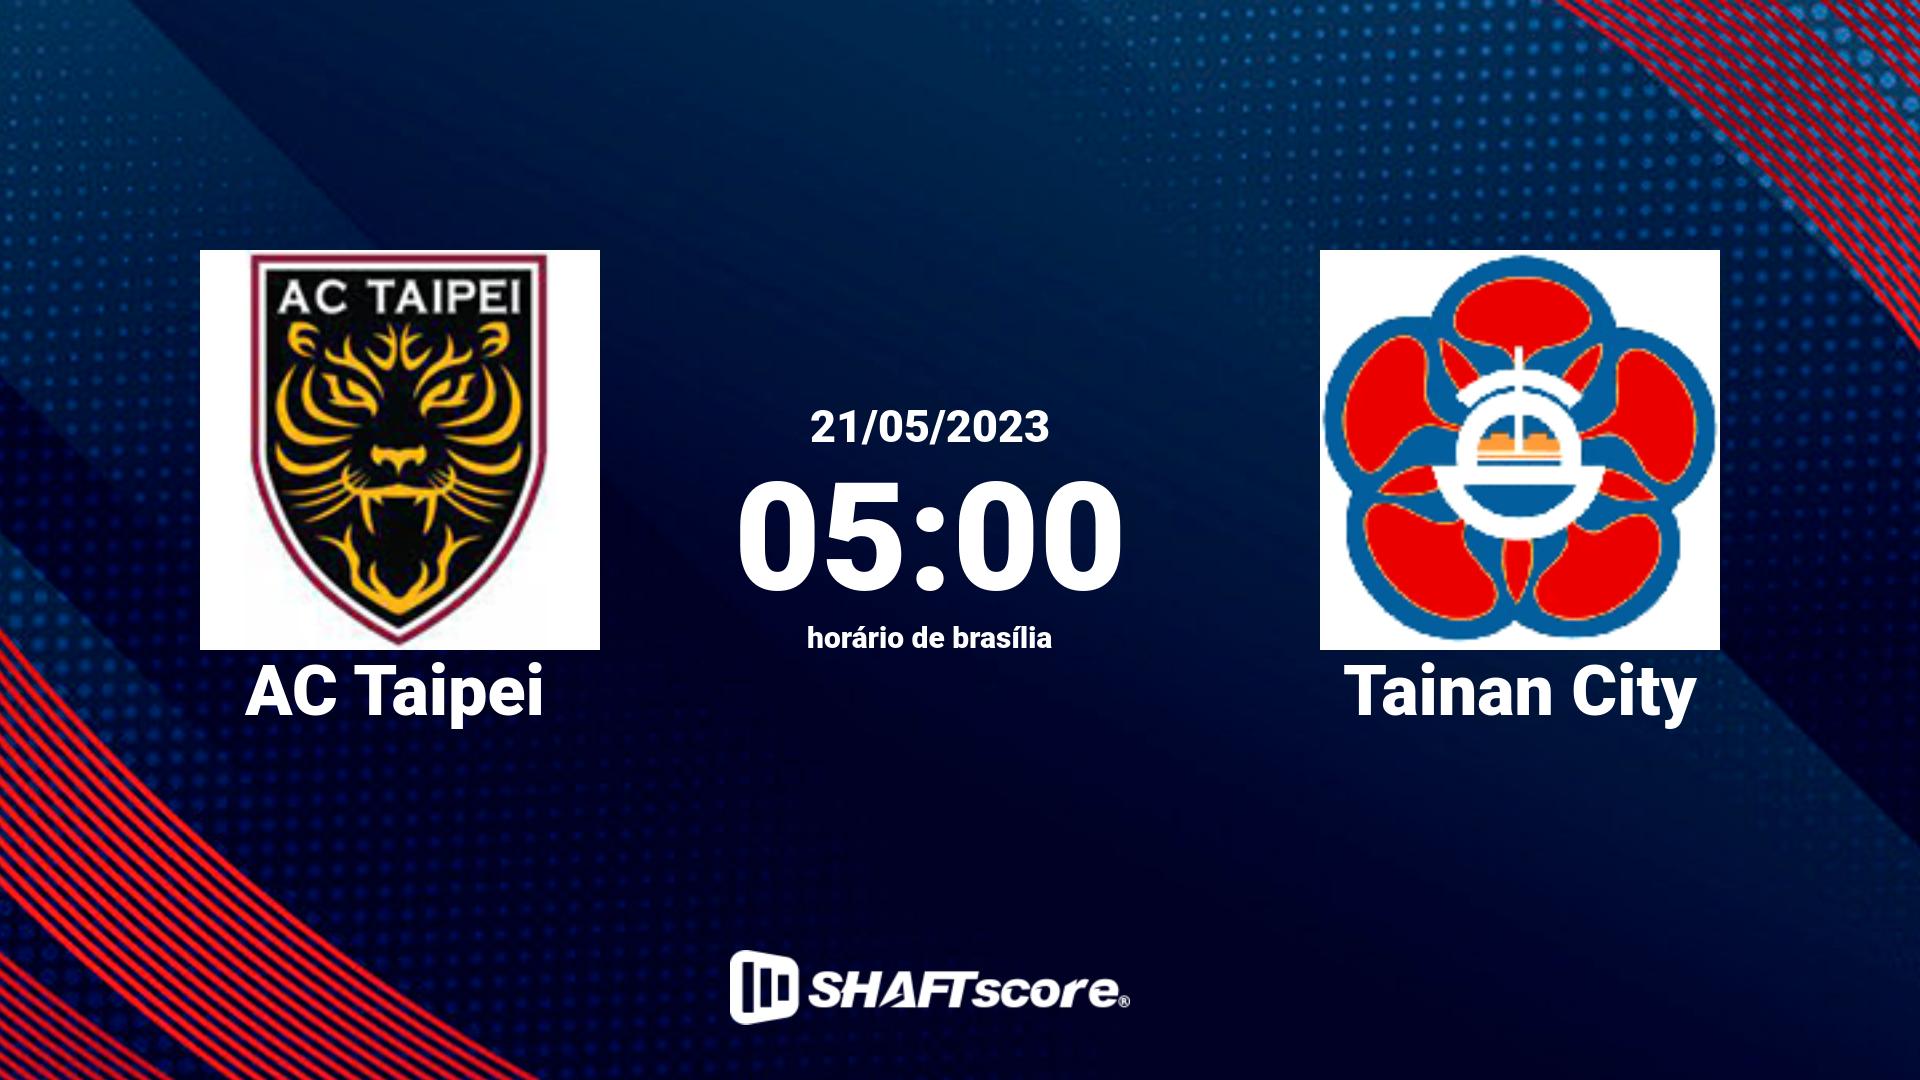 Estatísticas do jogo AC Taipei vs Tainan City 21.05 05:00